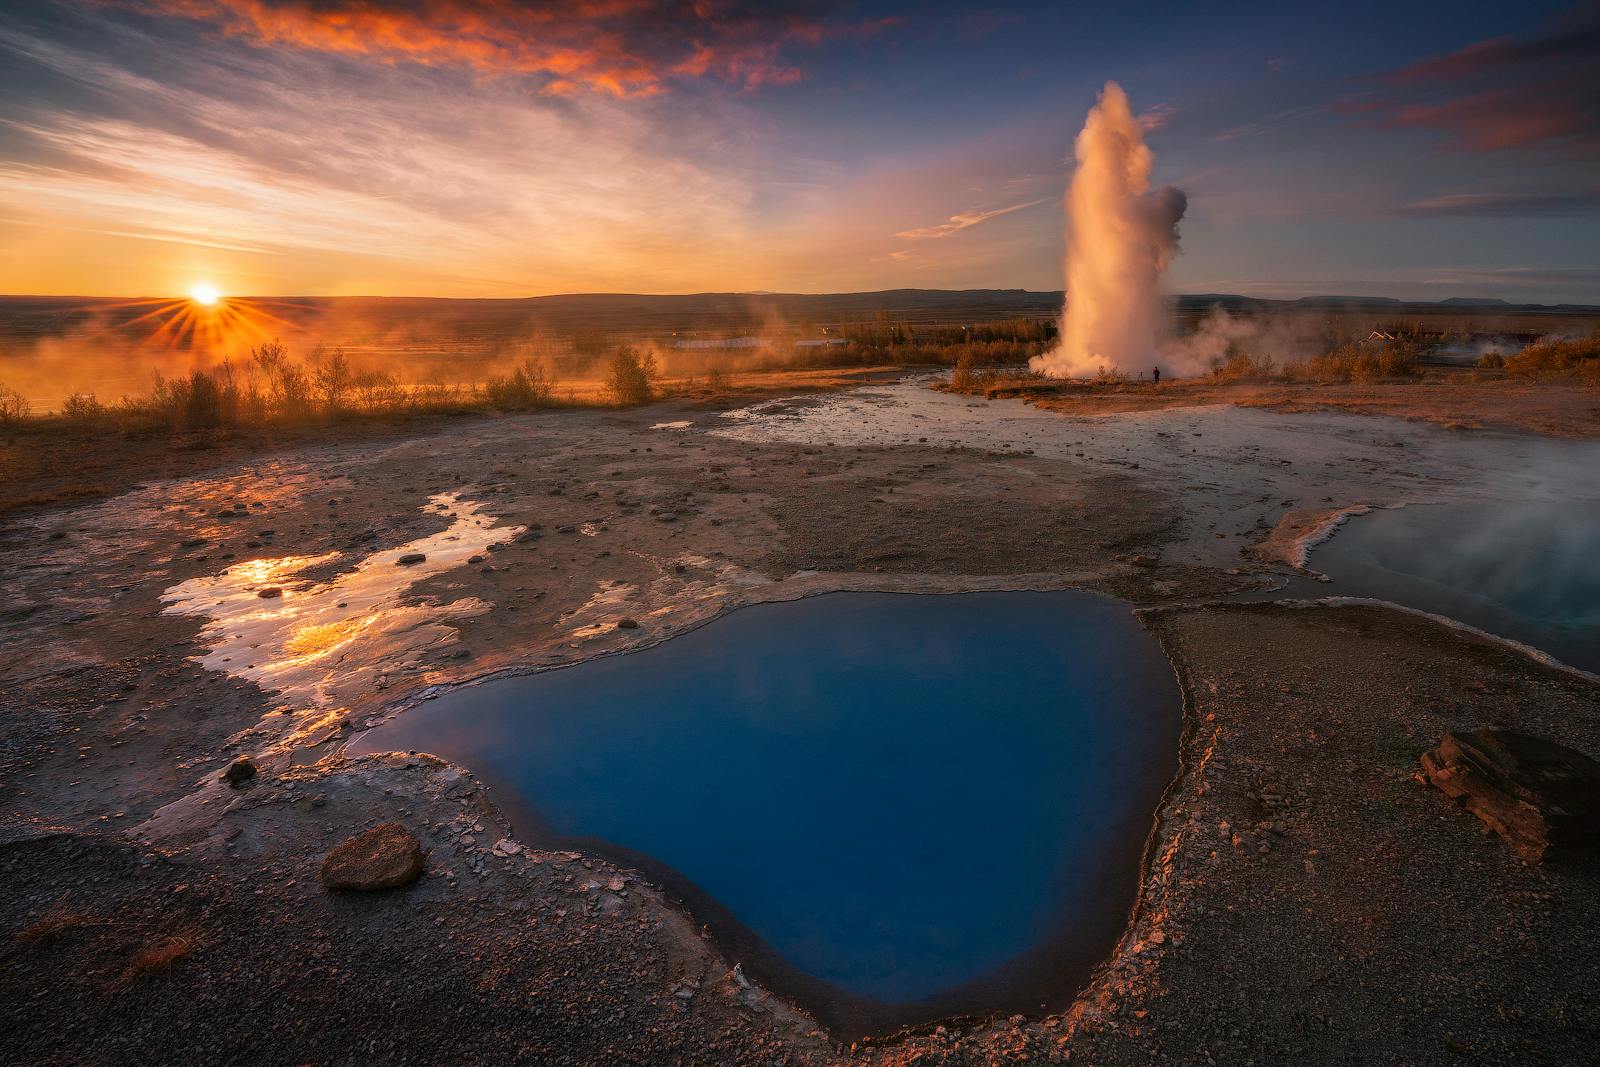 Nell'area geotermica di Geysir, assaporerai un emozionante momento di attesa proprio prima che il geyser Strokkur esploda.